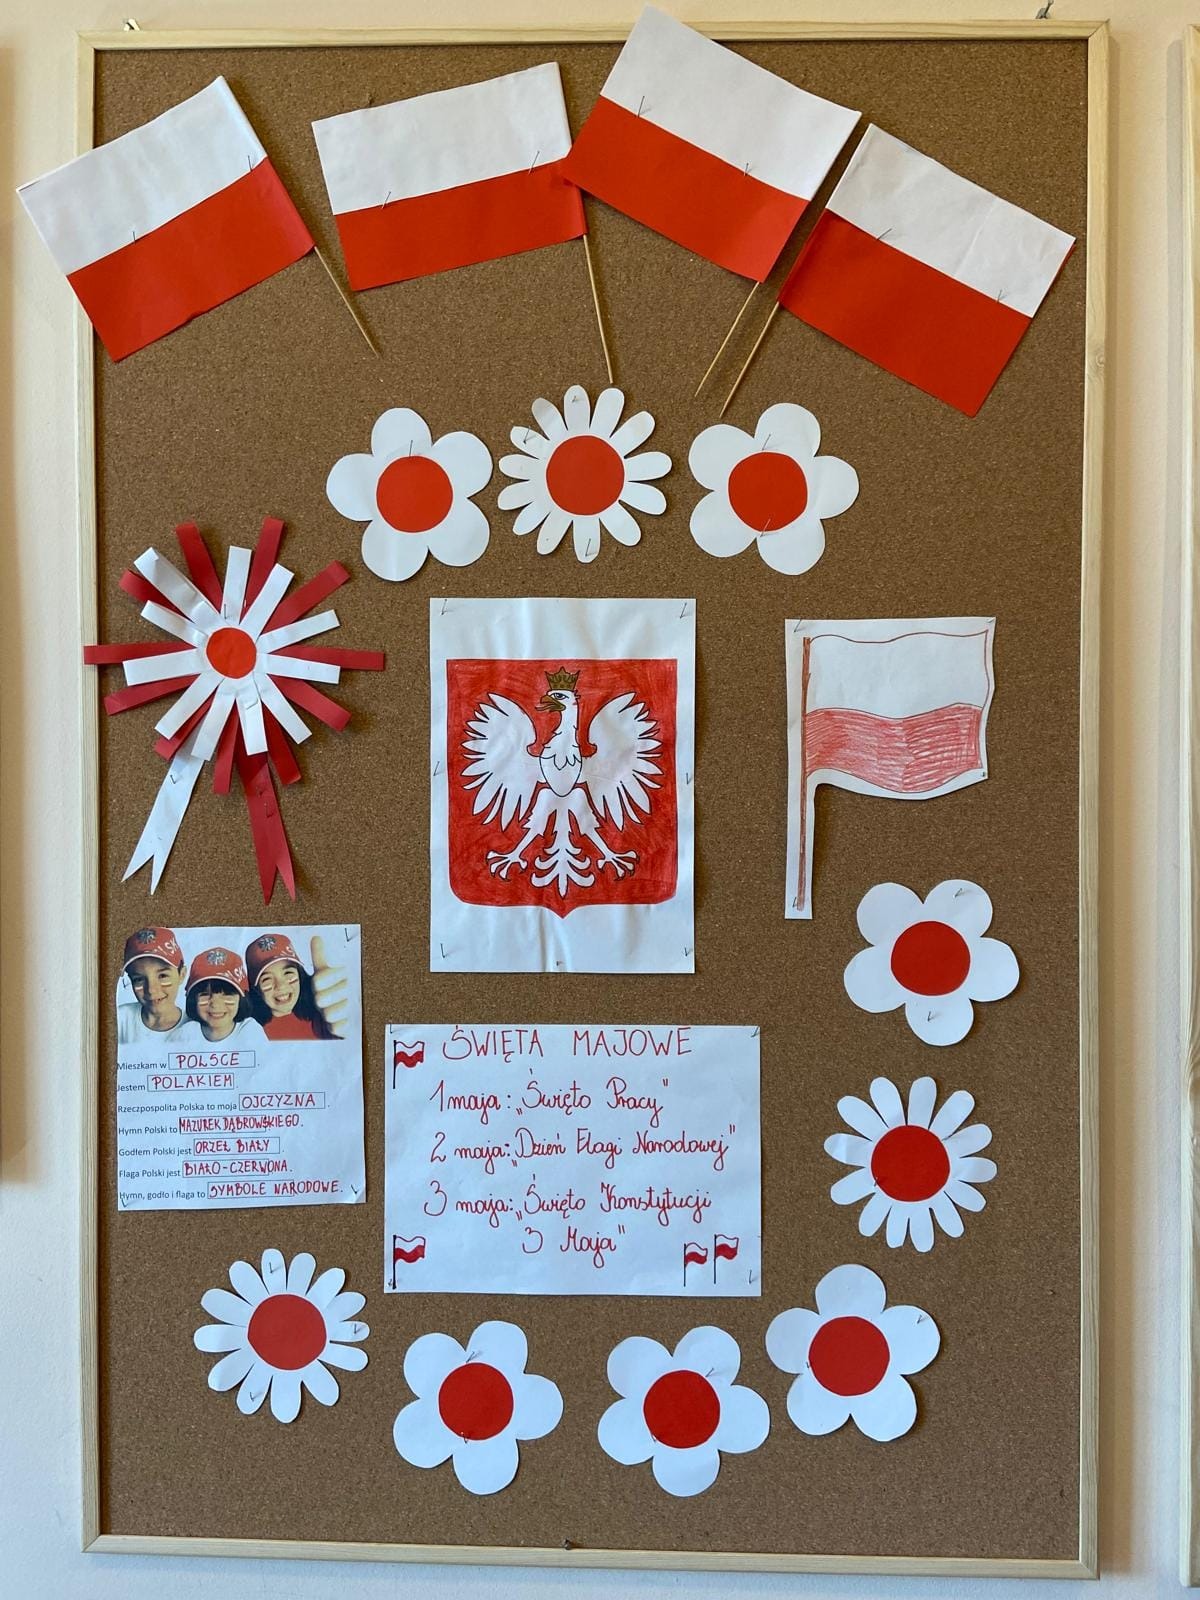 Gazetka dotycząca polskich symboli narodowych